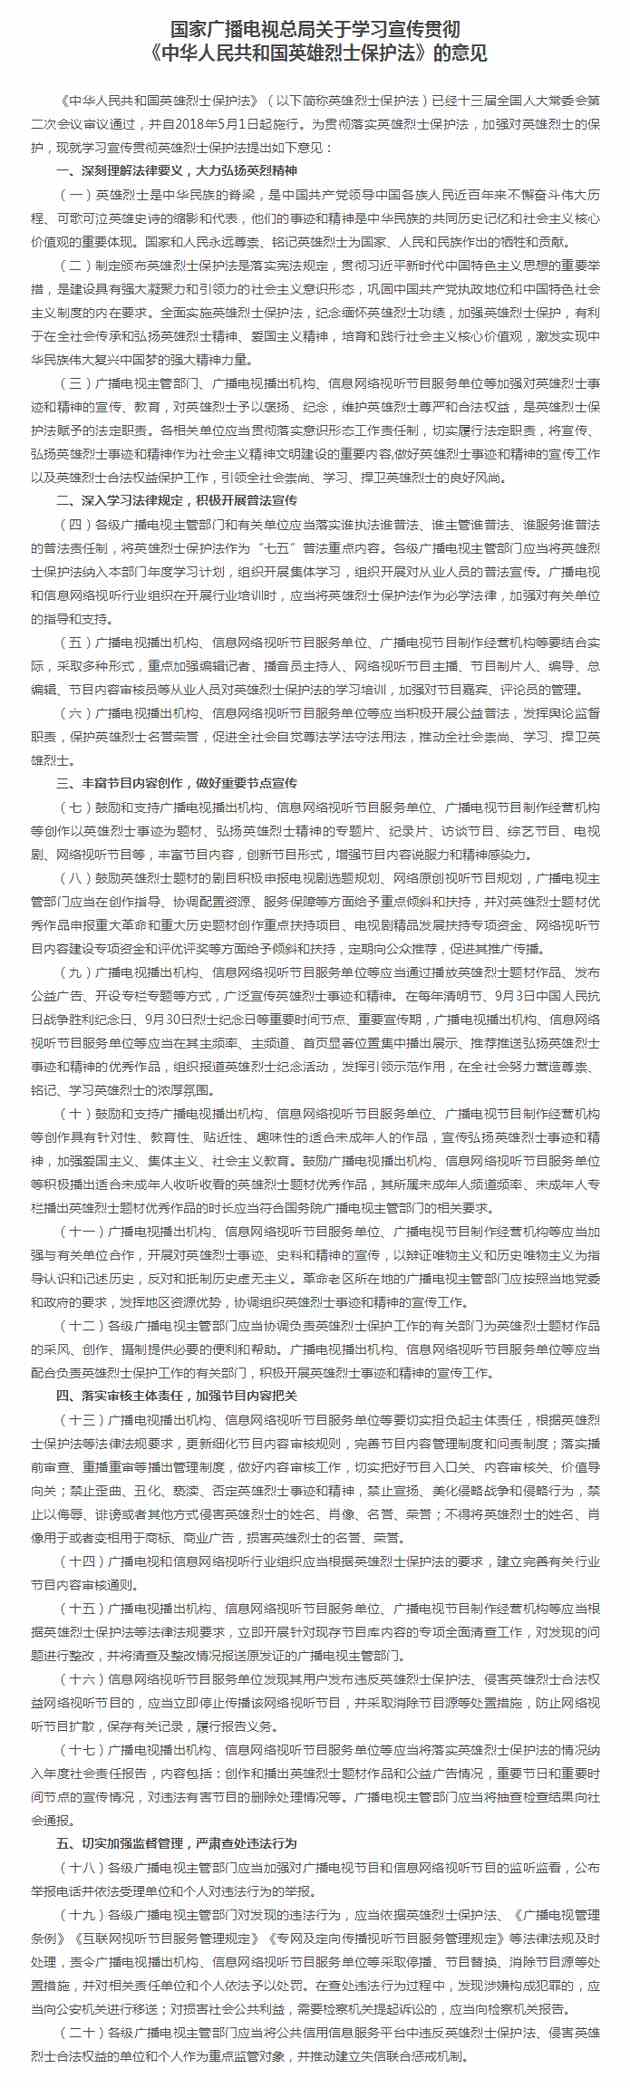 《国家广播电视总局关于学习宣传贯彻〈中华人民共和国英雄烈士保护法〉的意见》